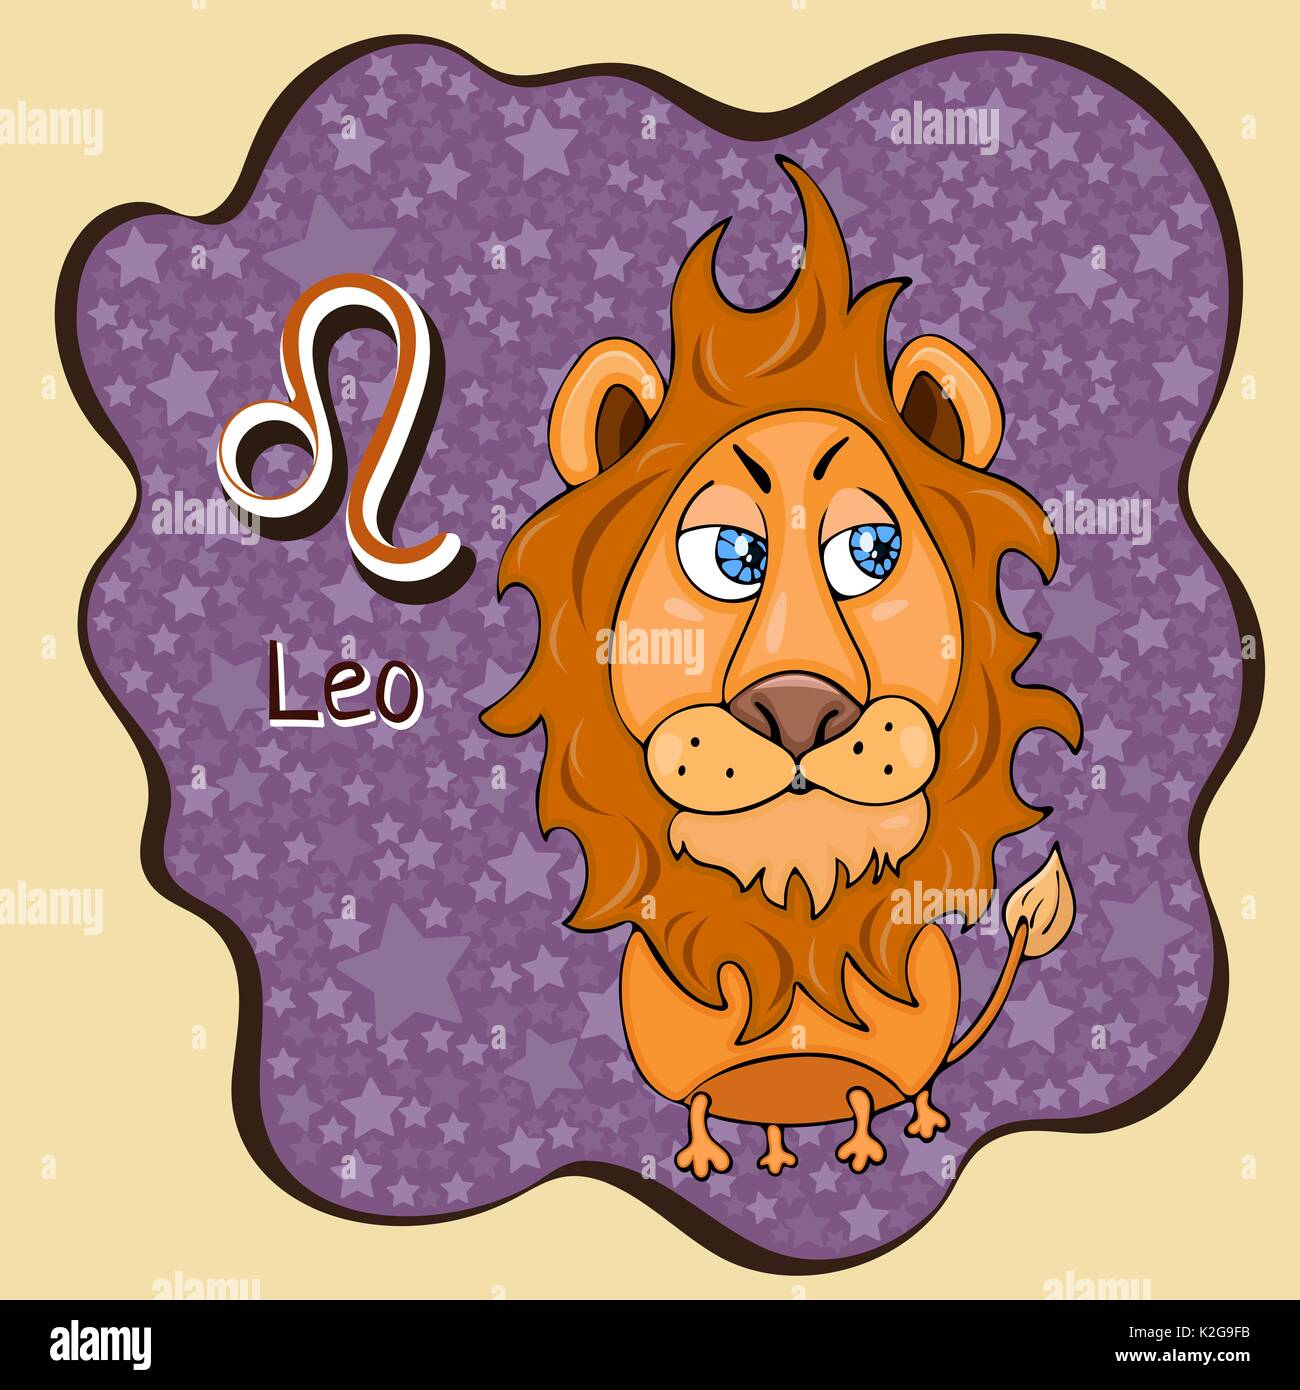 Segno zodiacale cartoon Leo, carattere astrologico, disegno a mano. Dipinto funny leo nel telaio sotto forma di una definizione astratta viola macchia di inchiostro con backgrou Illustrazione Vettoriale